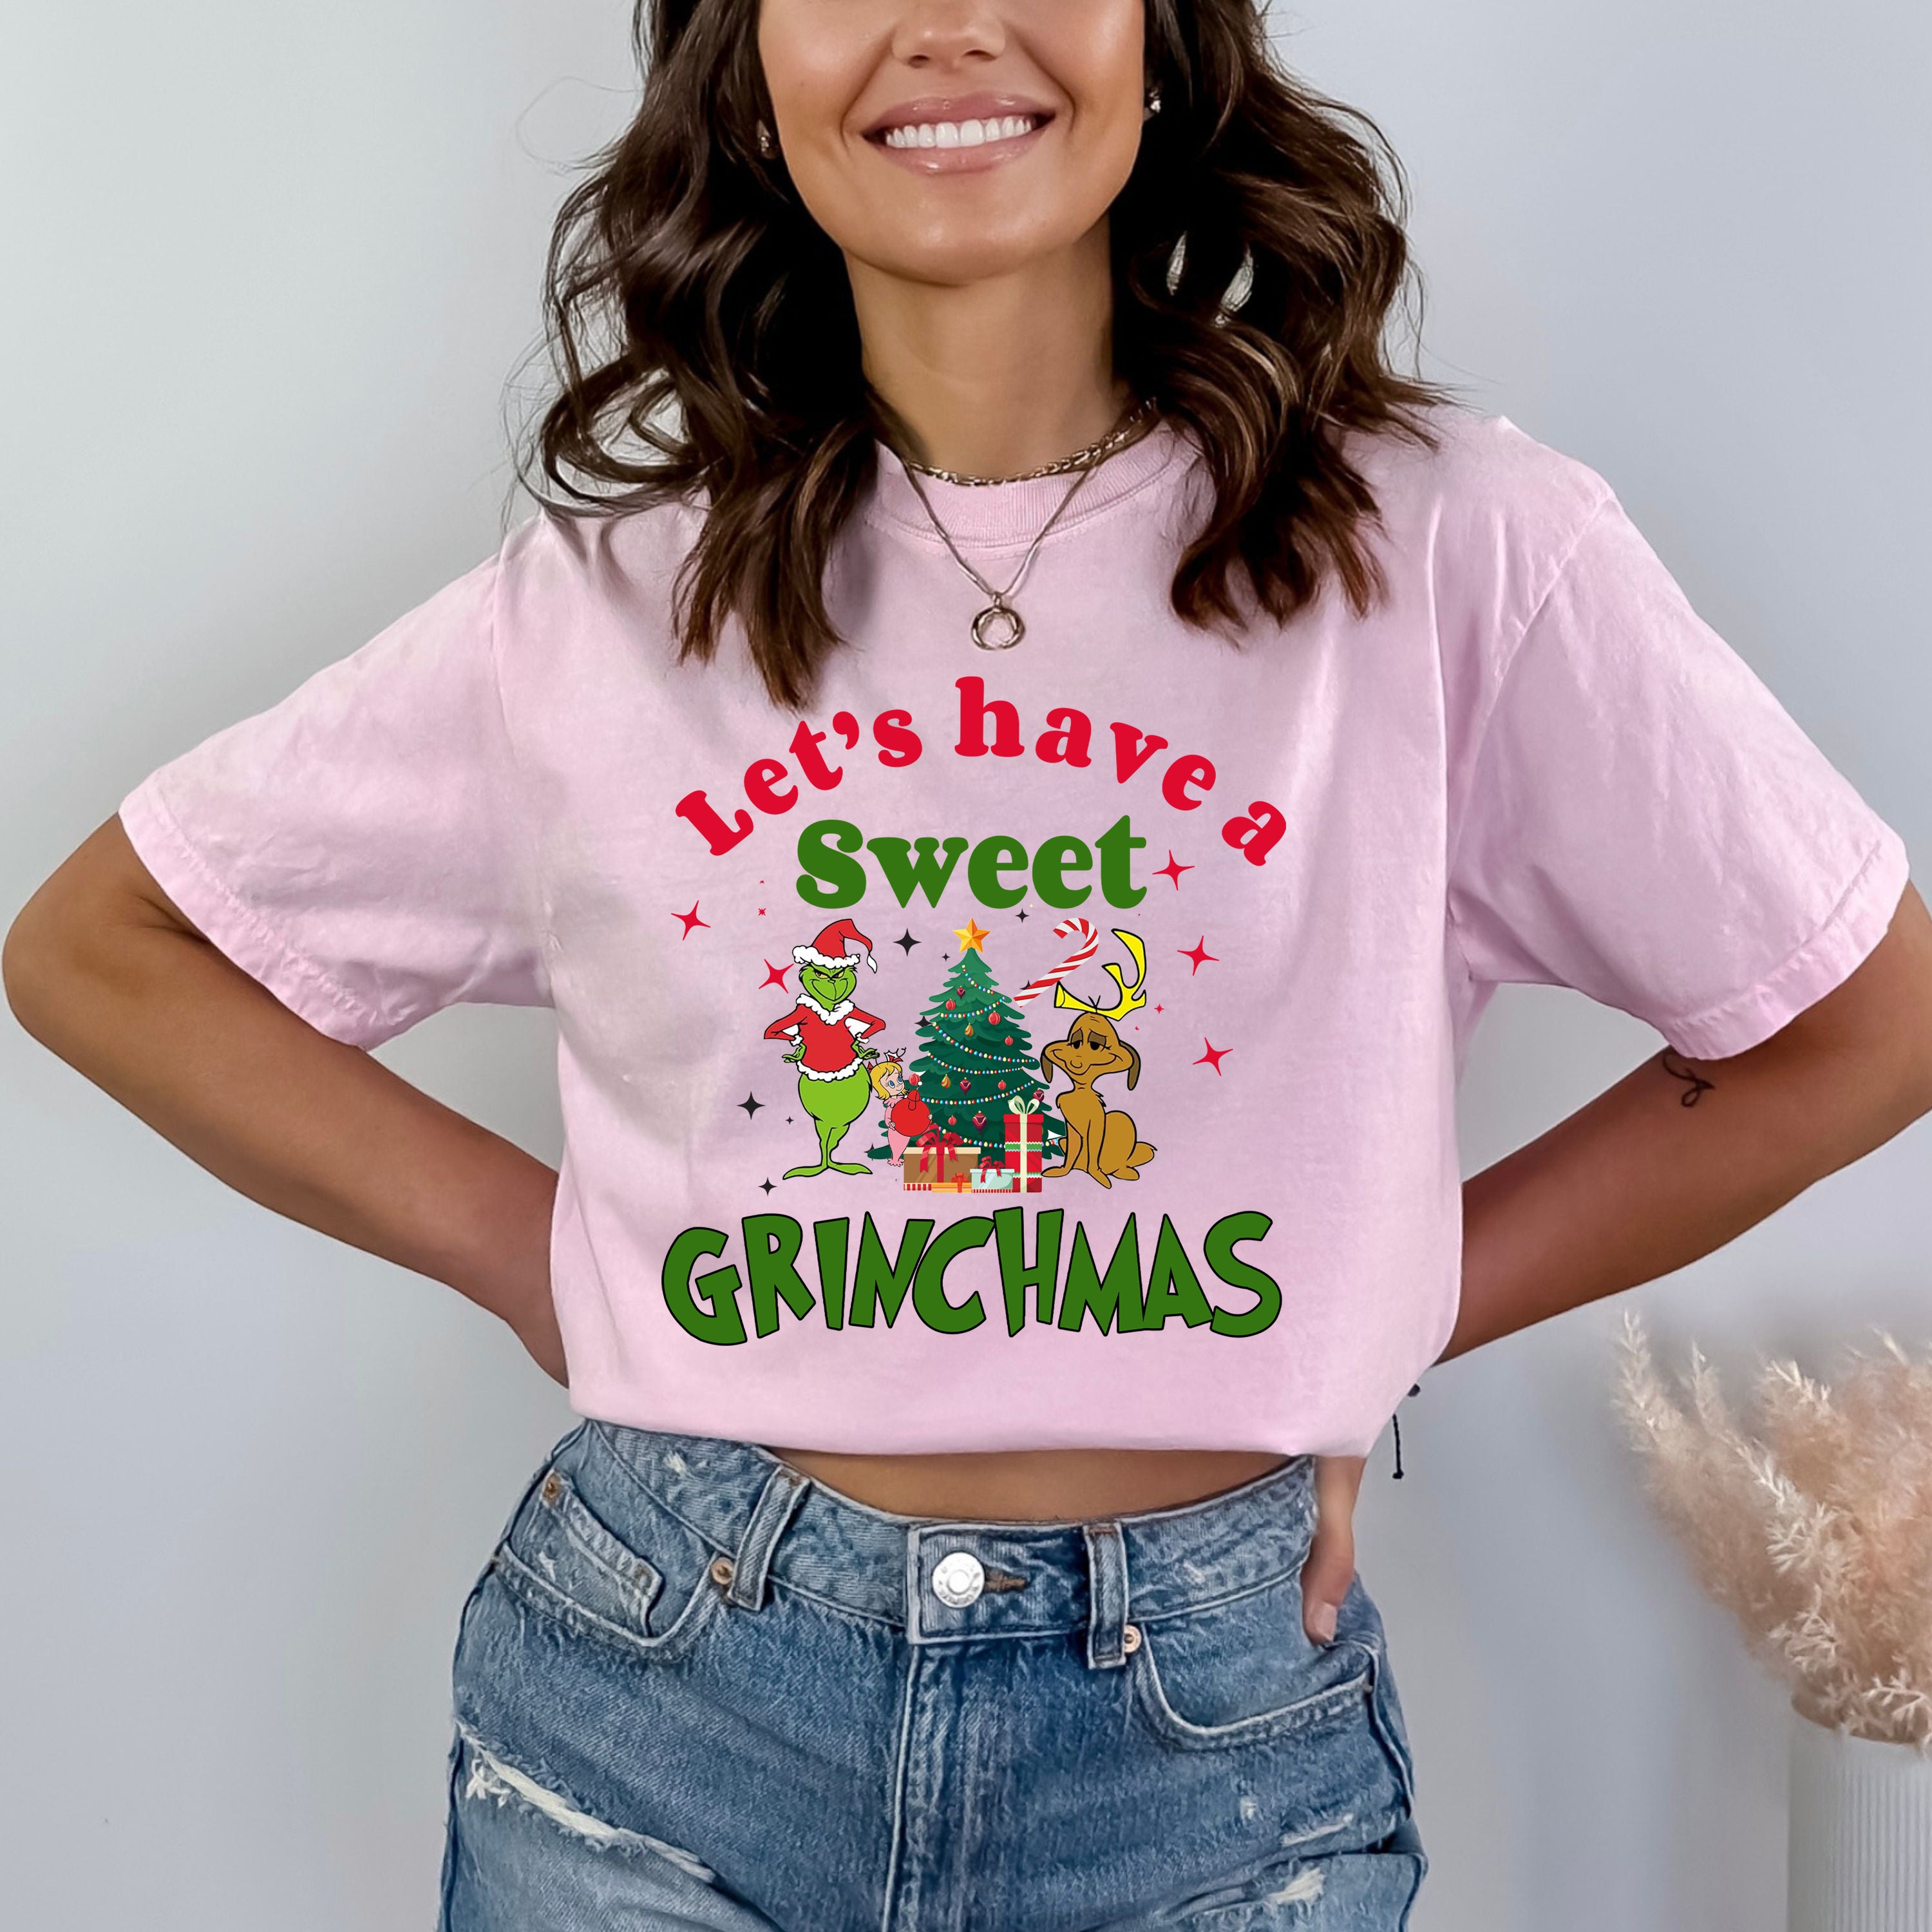 Let's Have a Sweet Grinchmas - Bella Canvas